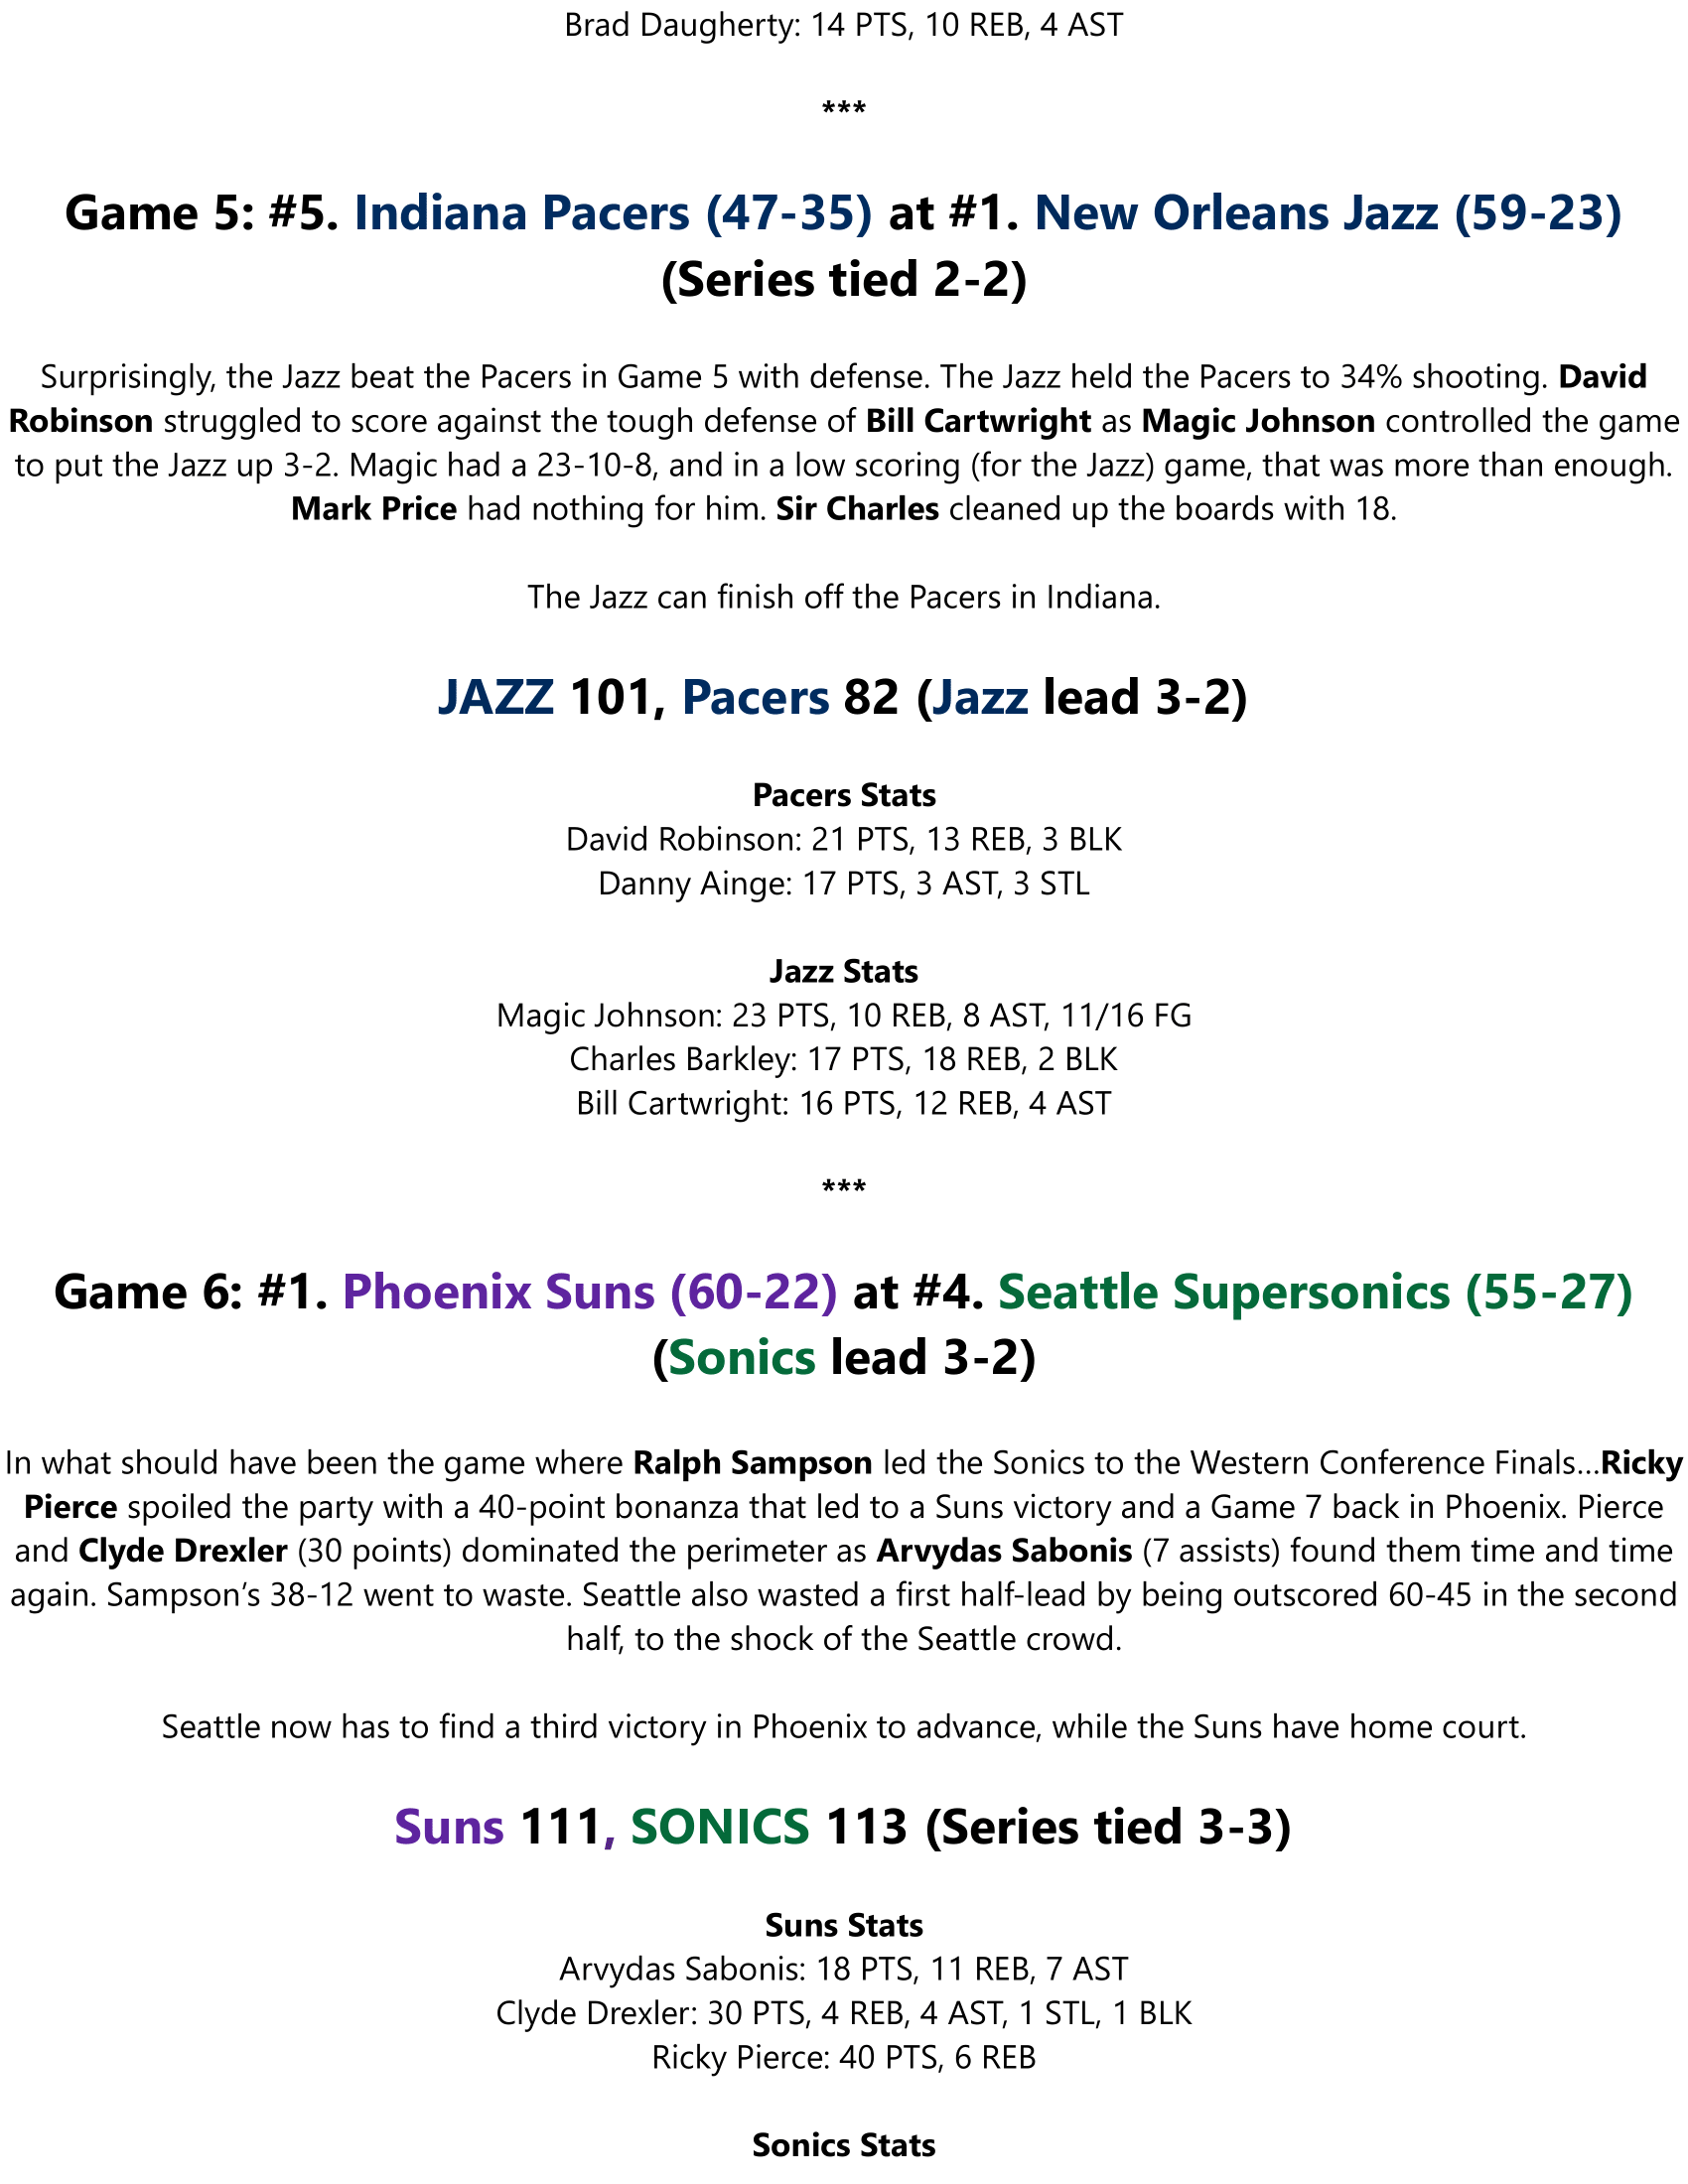 88-89-Part-6-Semi-Finals-Conf-F-Preview-11.png